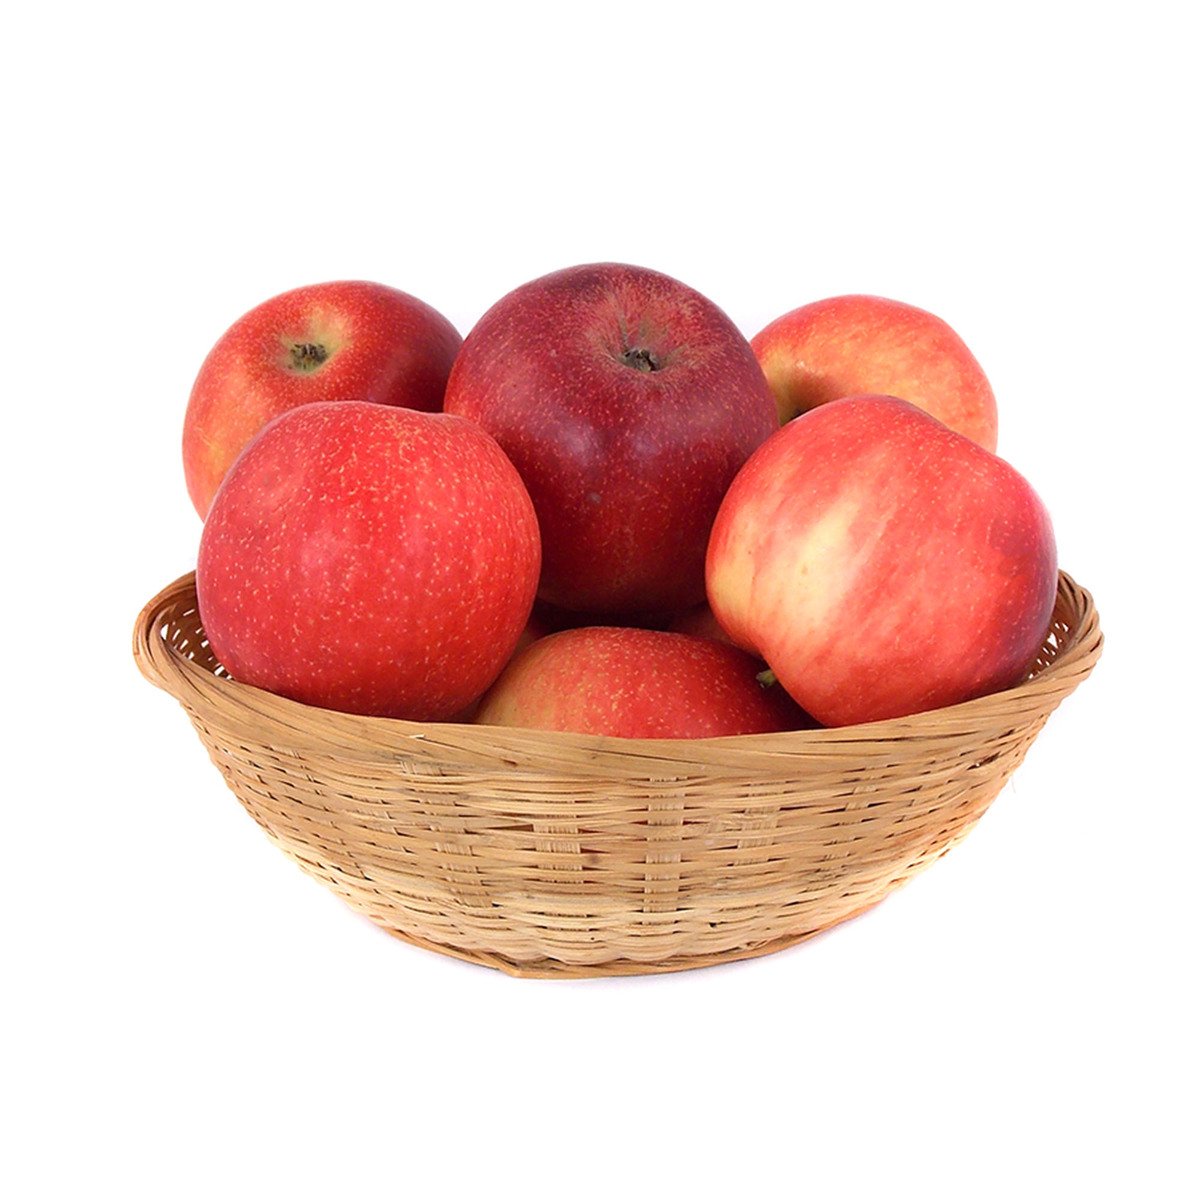 Buy Apple Red Prince Germany 1 kg Online at Best Price | Apples | Lulu UAE in Saudi Arabia